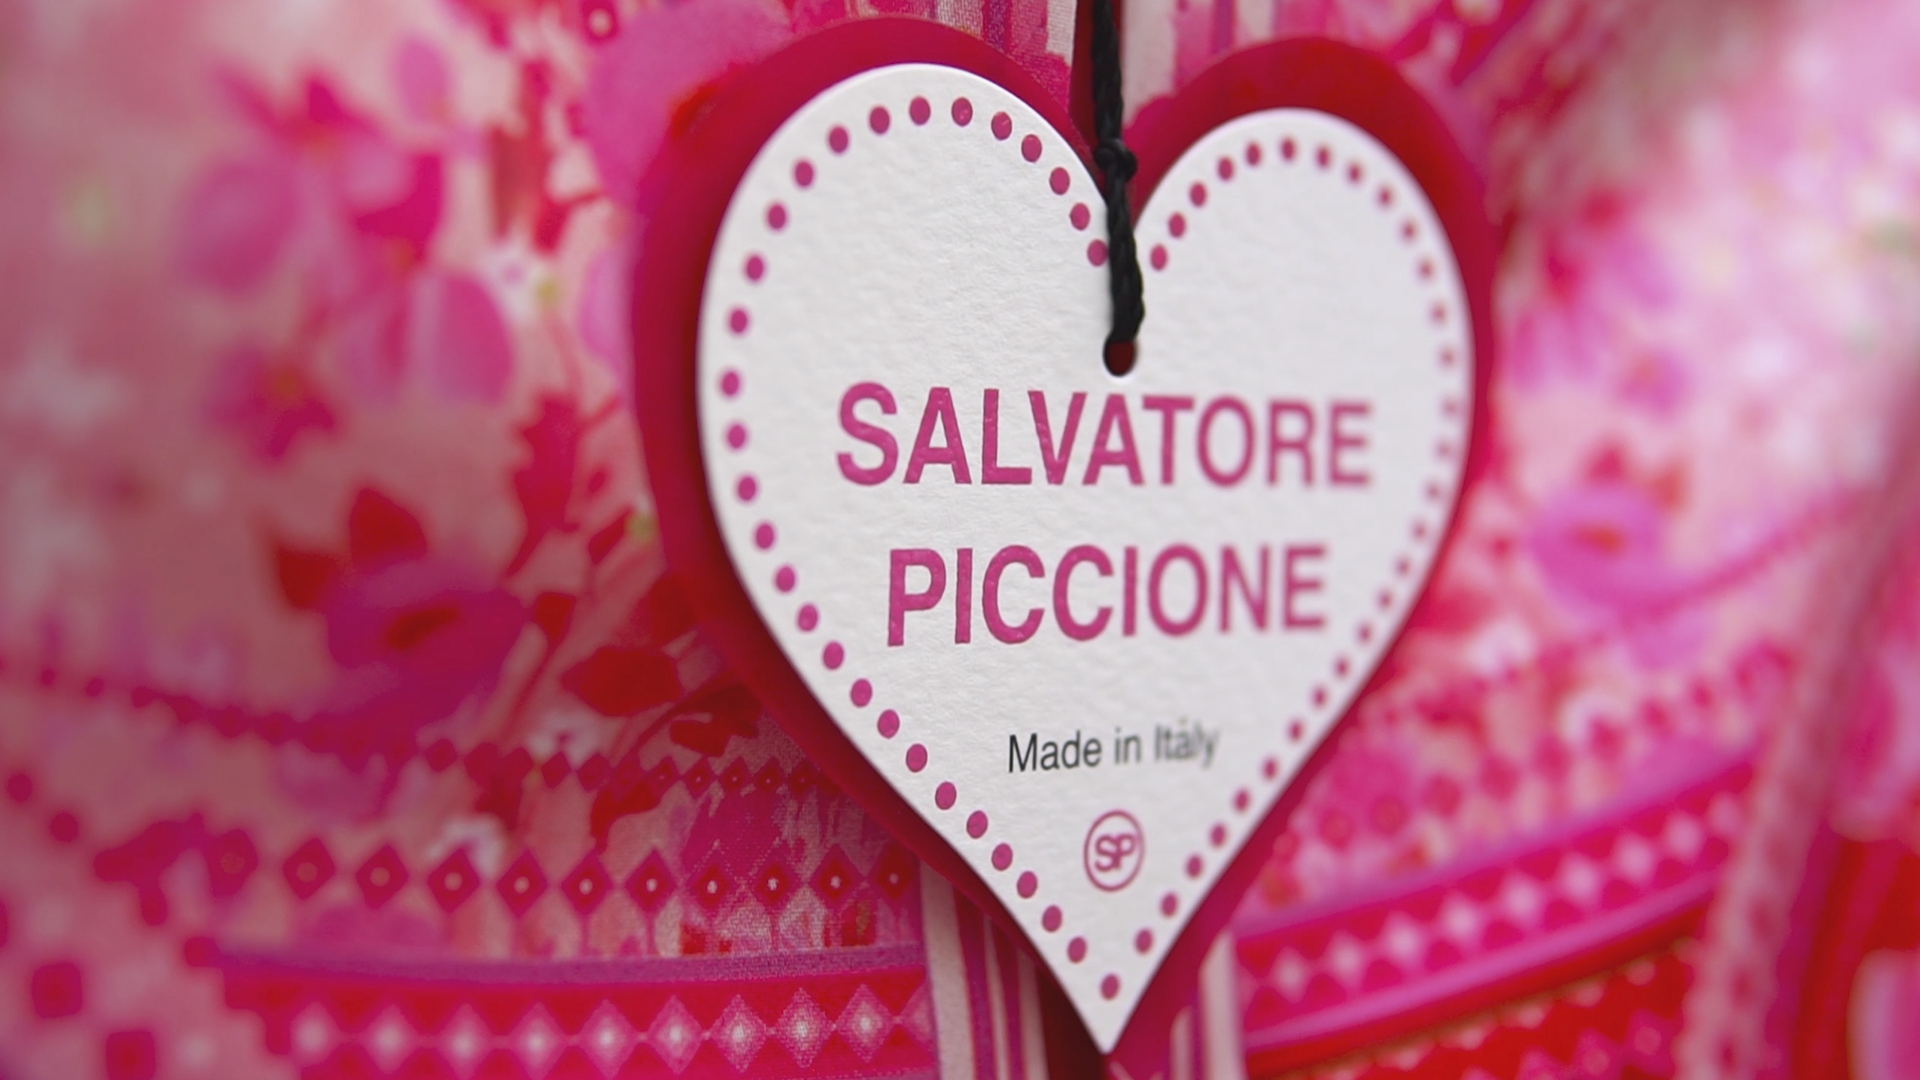 Salvatore Piccione Ad Campaign Spring/Summer 2020